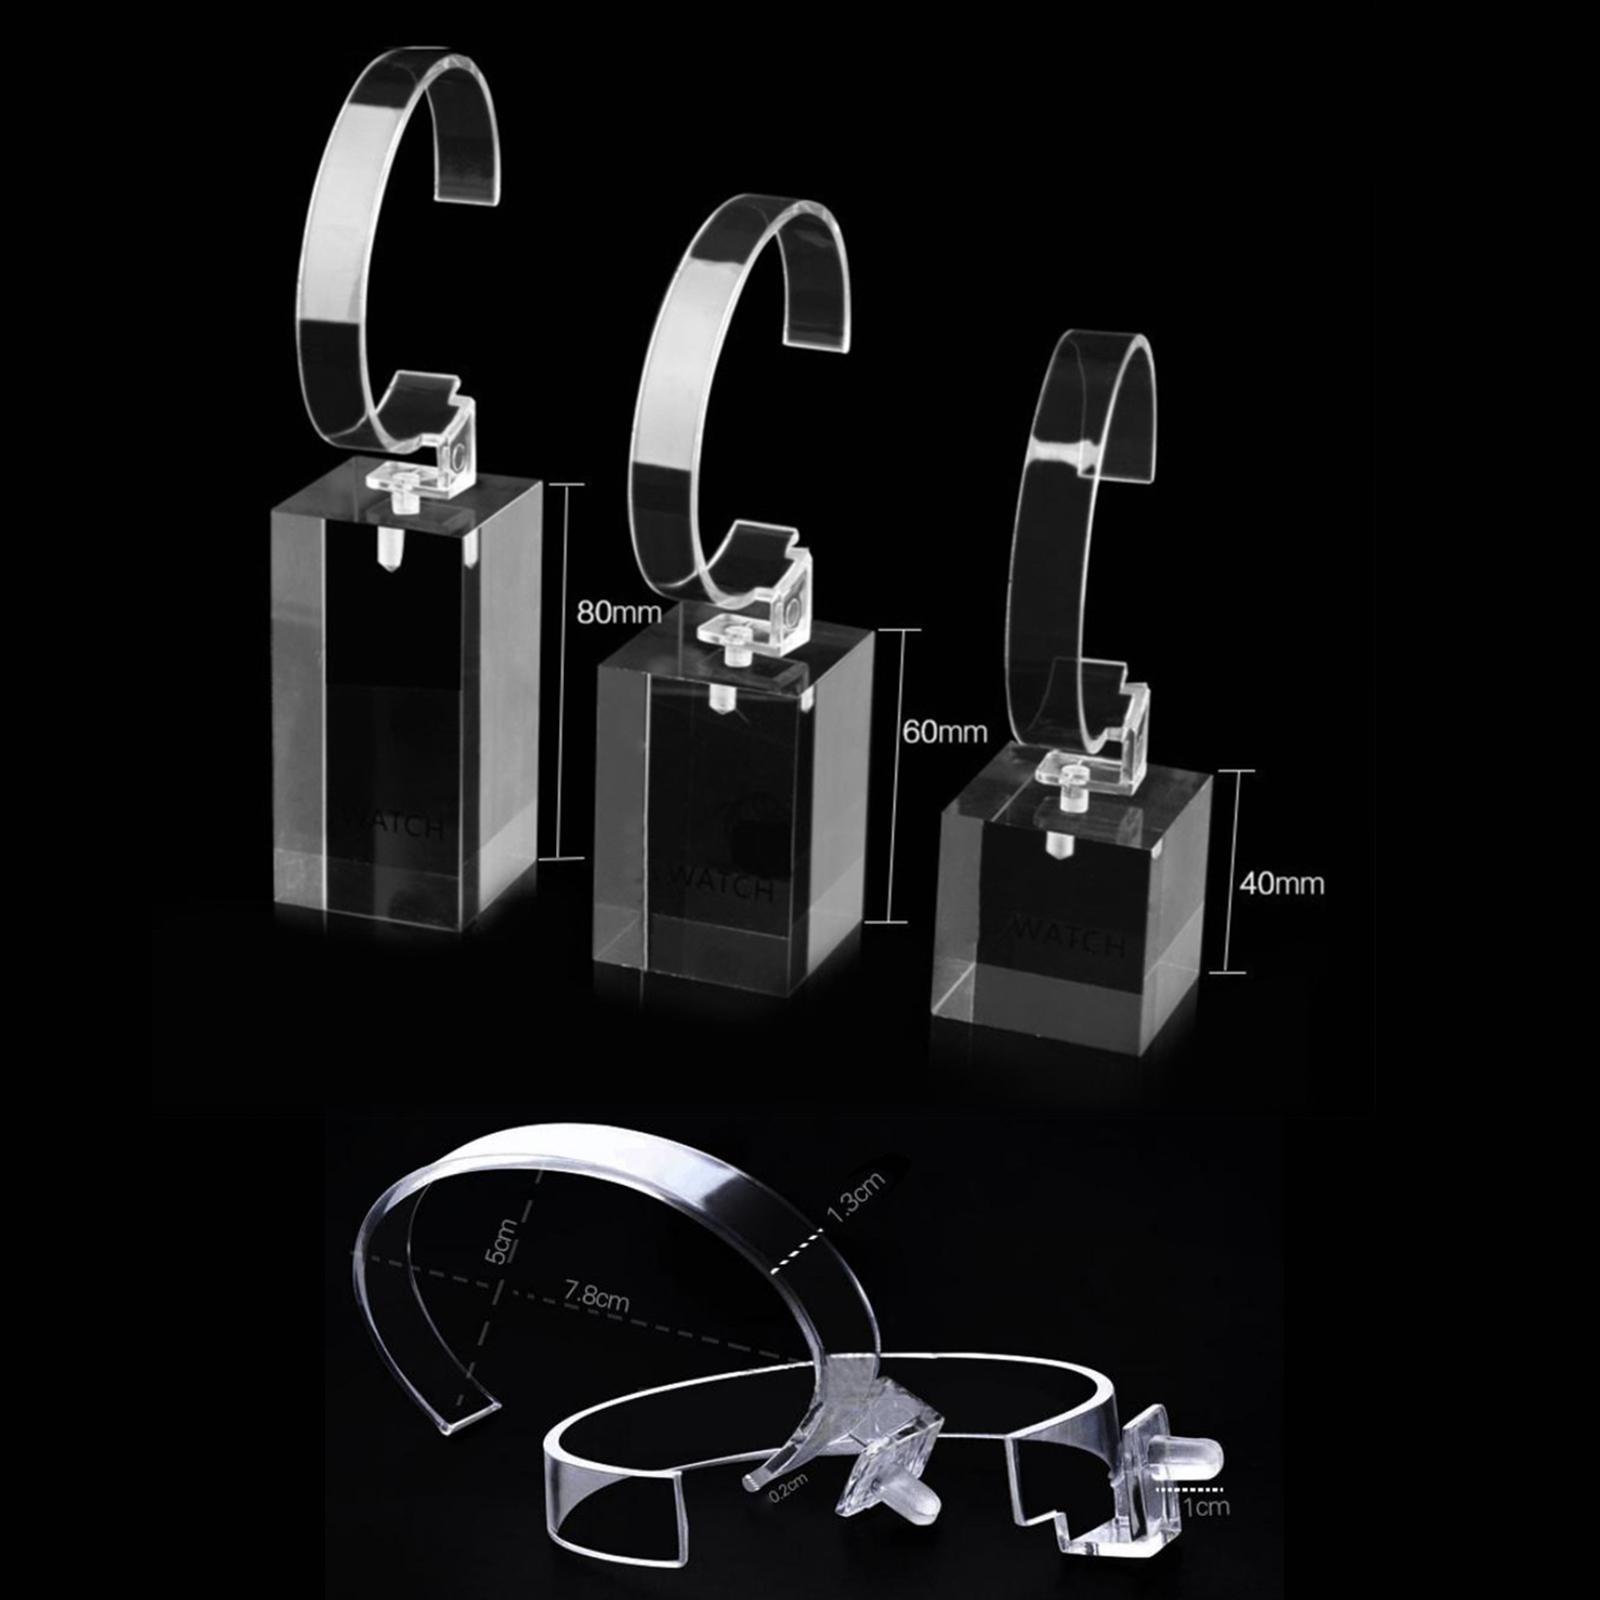 3x Jewelry Bracelet Watch Display Rack, Acrylic  Stand Minimalist Wrist Watch Holder Organizer for Shop, Vanity, Dresser, Table Show